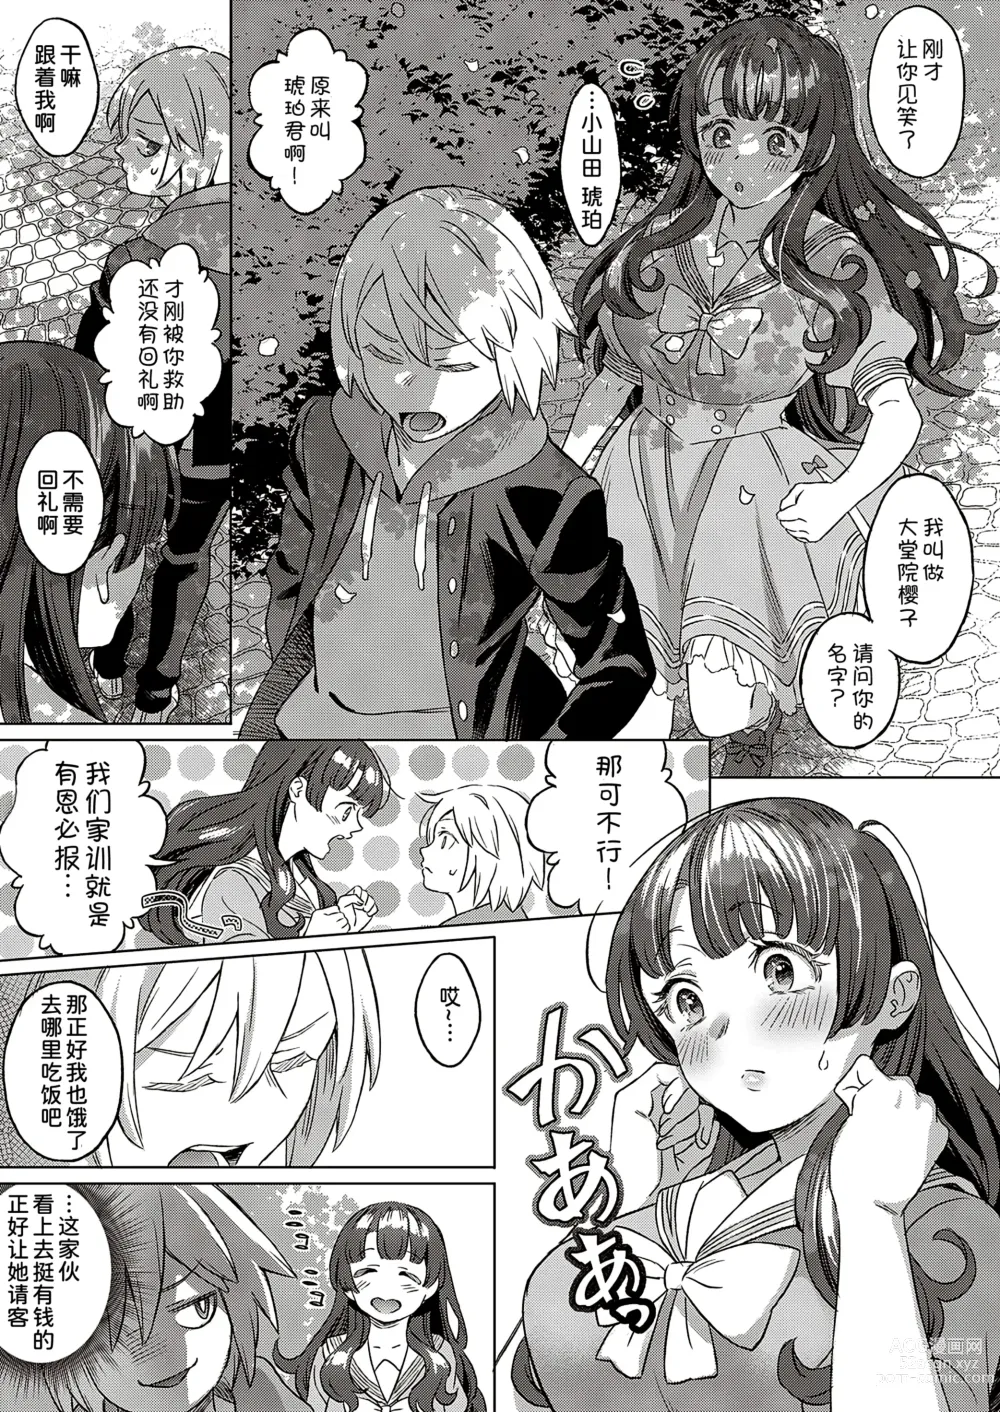 Page 4 of manga Kohakuiro no Machi, Sakura ga Ita Kisetsu